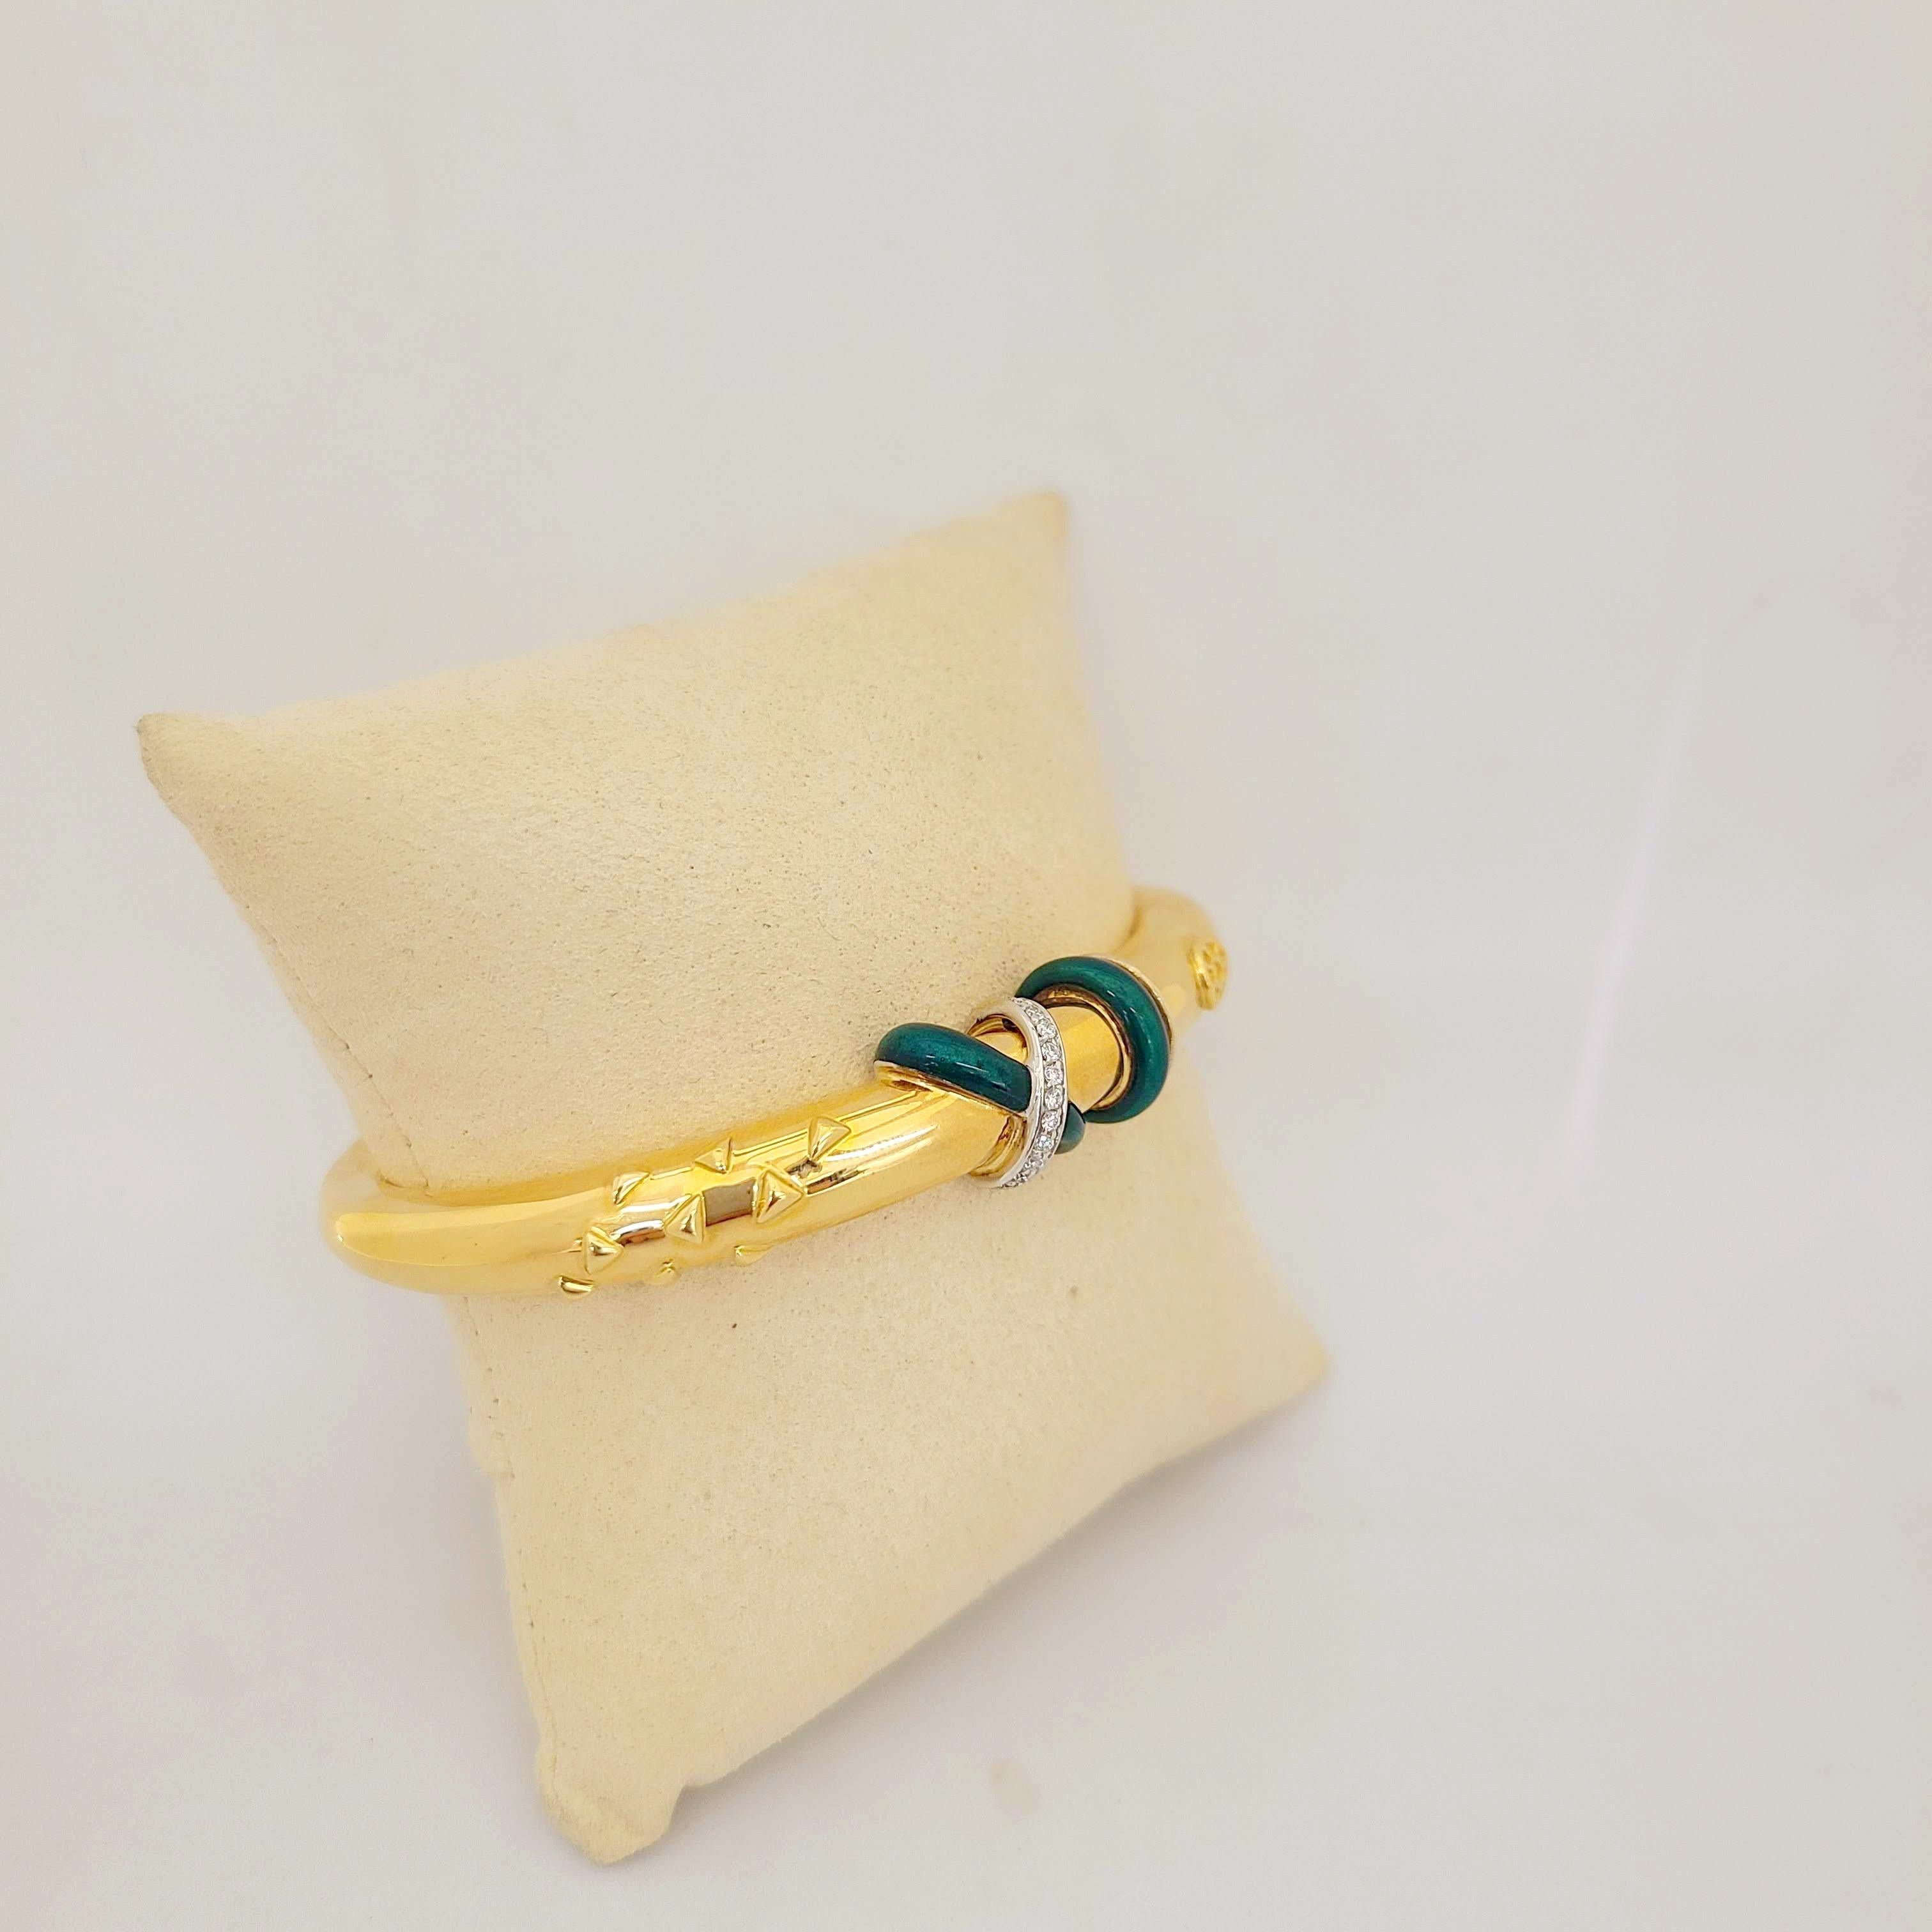 Round Cut La Nouvelle Bague 18 Karat Gold Bangle Bracelet with Diamonds and Green Enamel For Sale